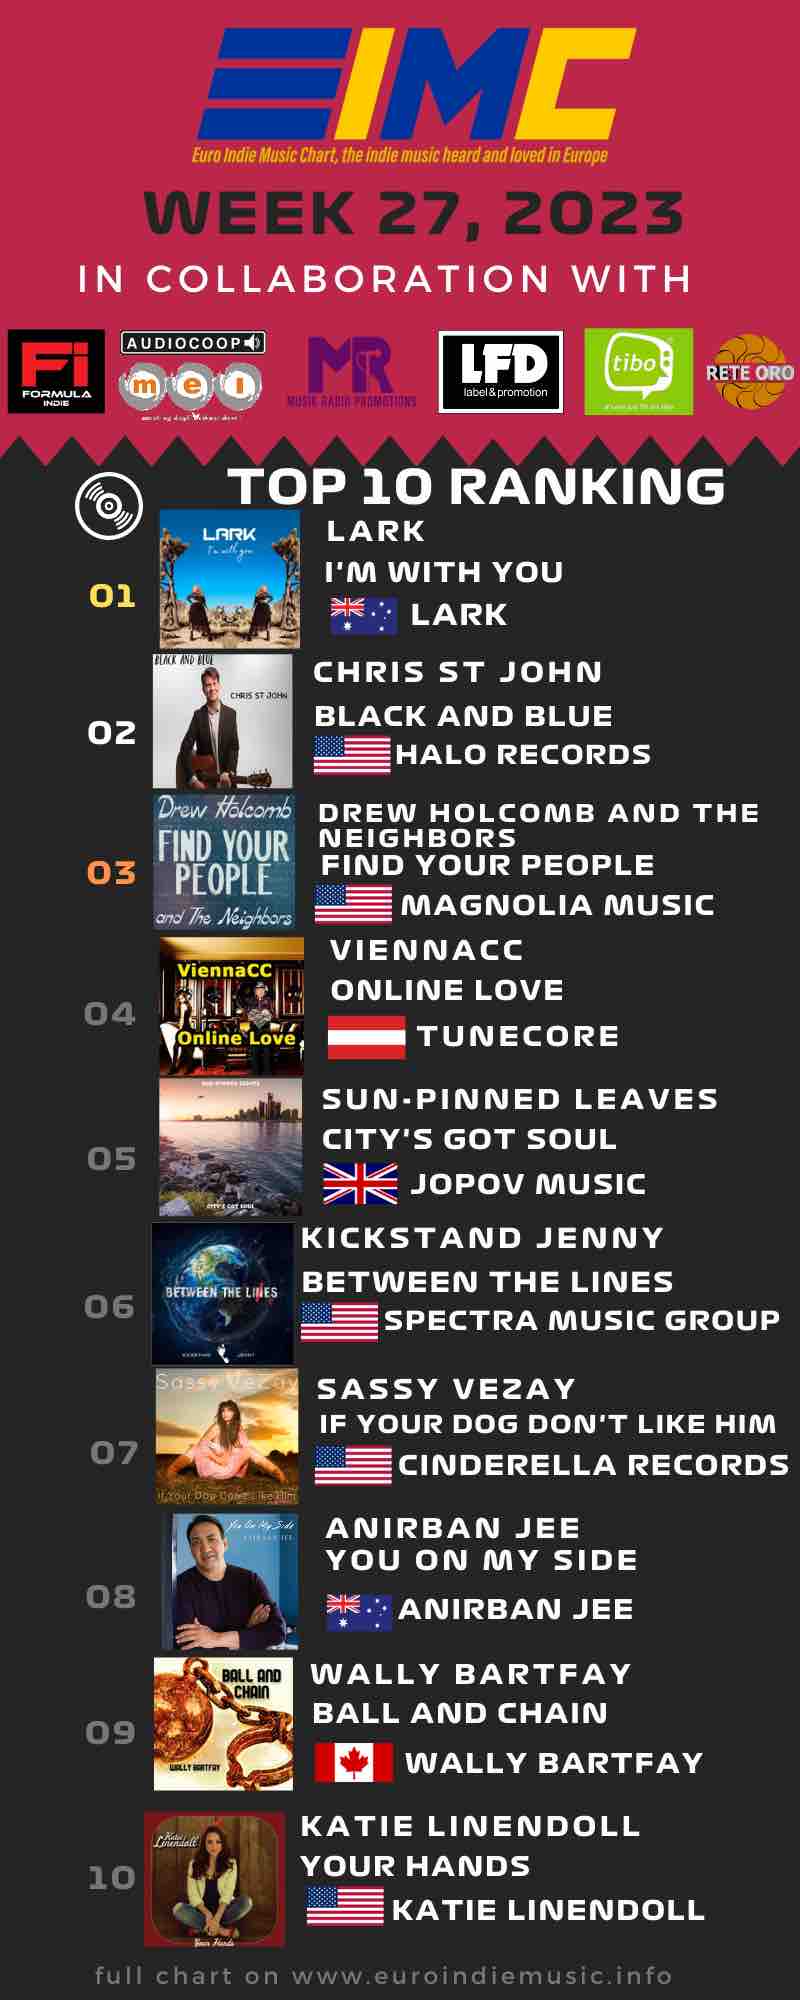 Nuova Euro Indie Music Chart: Questa settimana al primo posto della classifica troviamo Lark con I’m with you seguito da Chris St. John con Black and blue